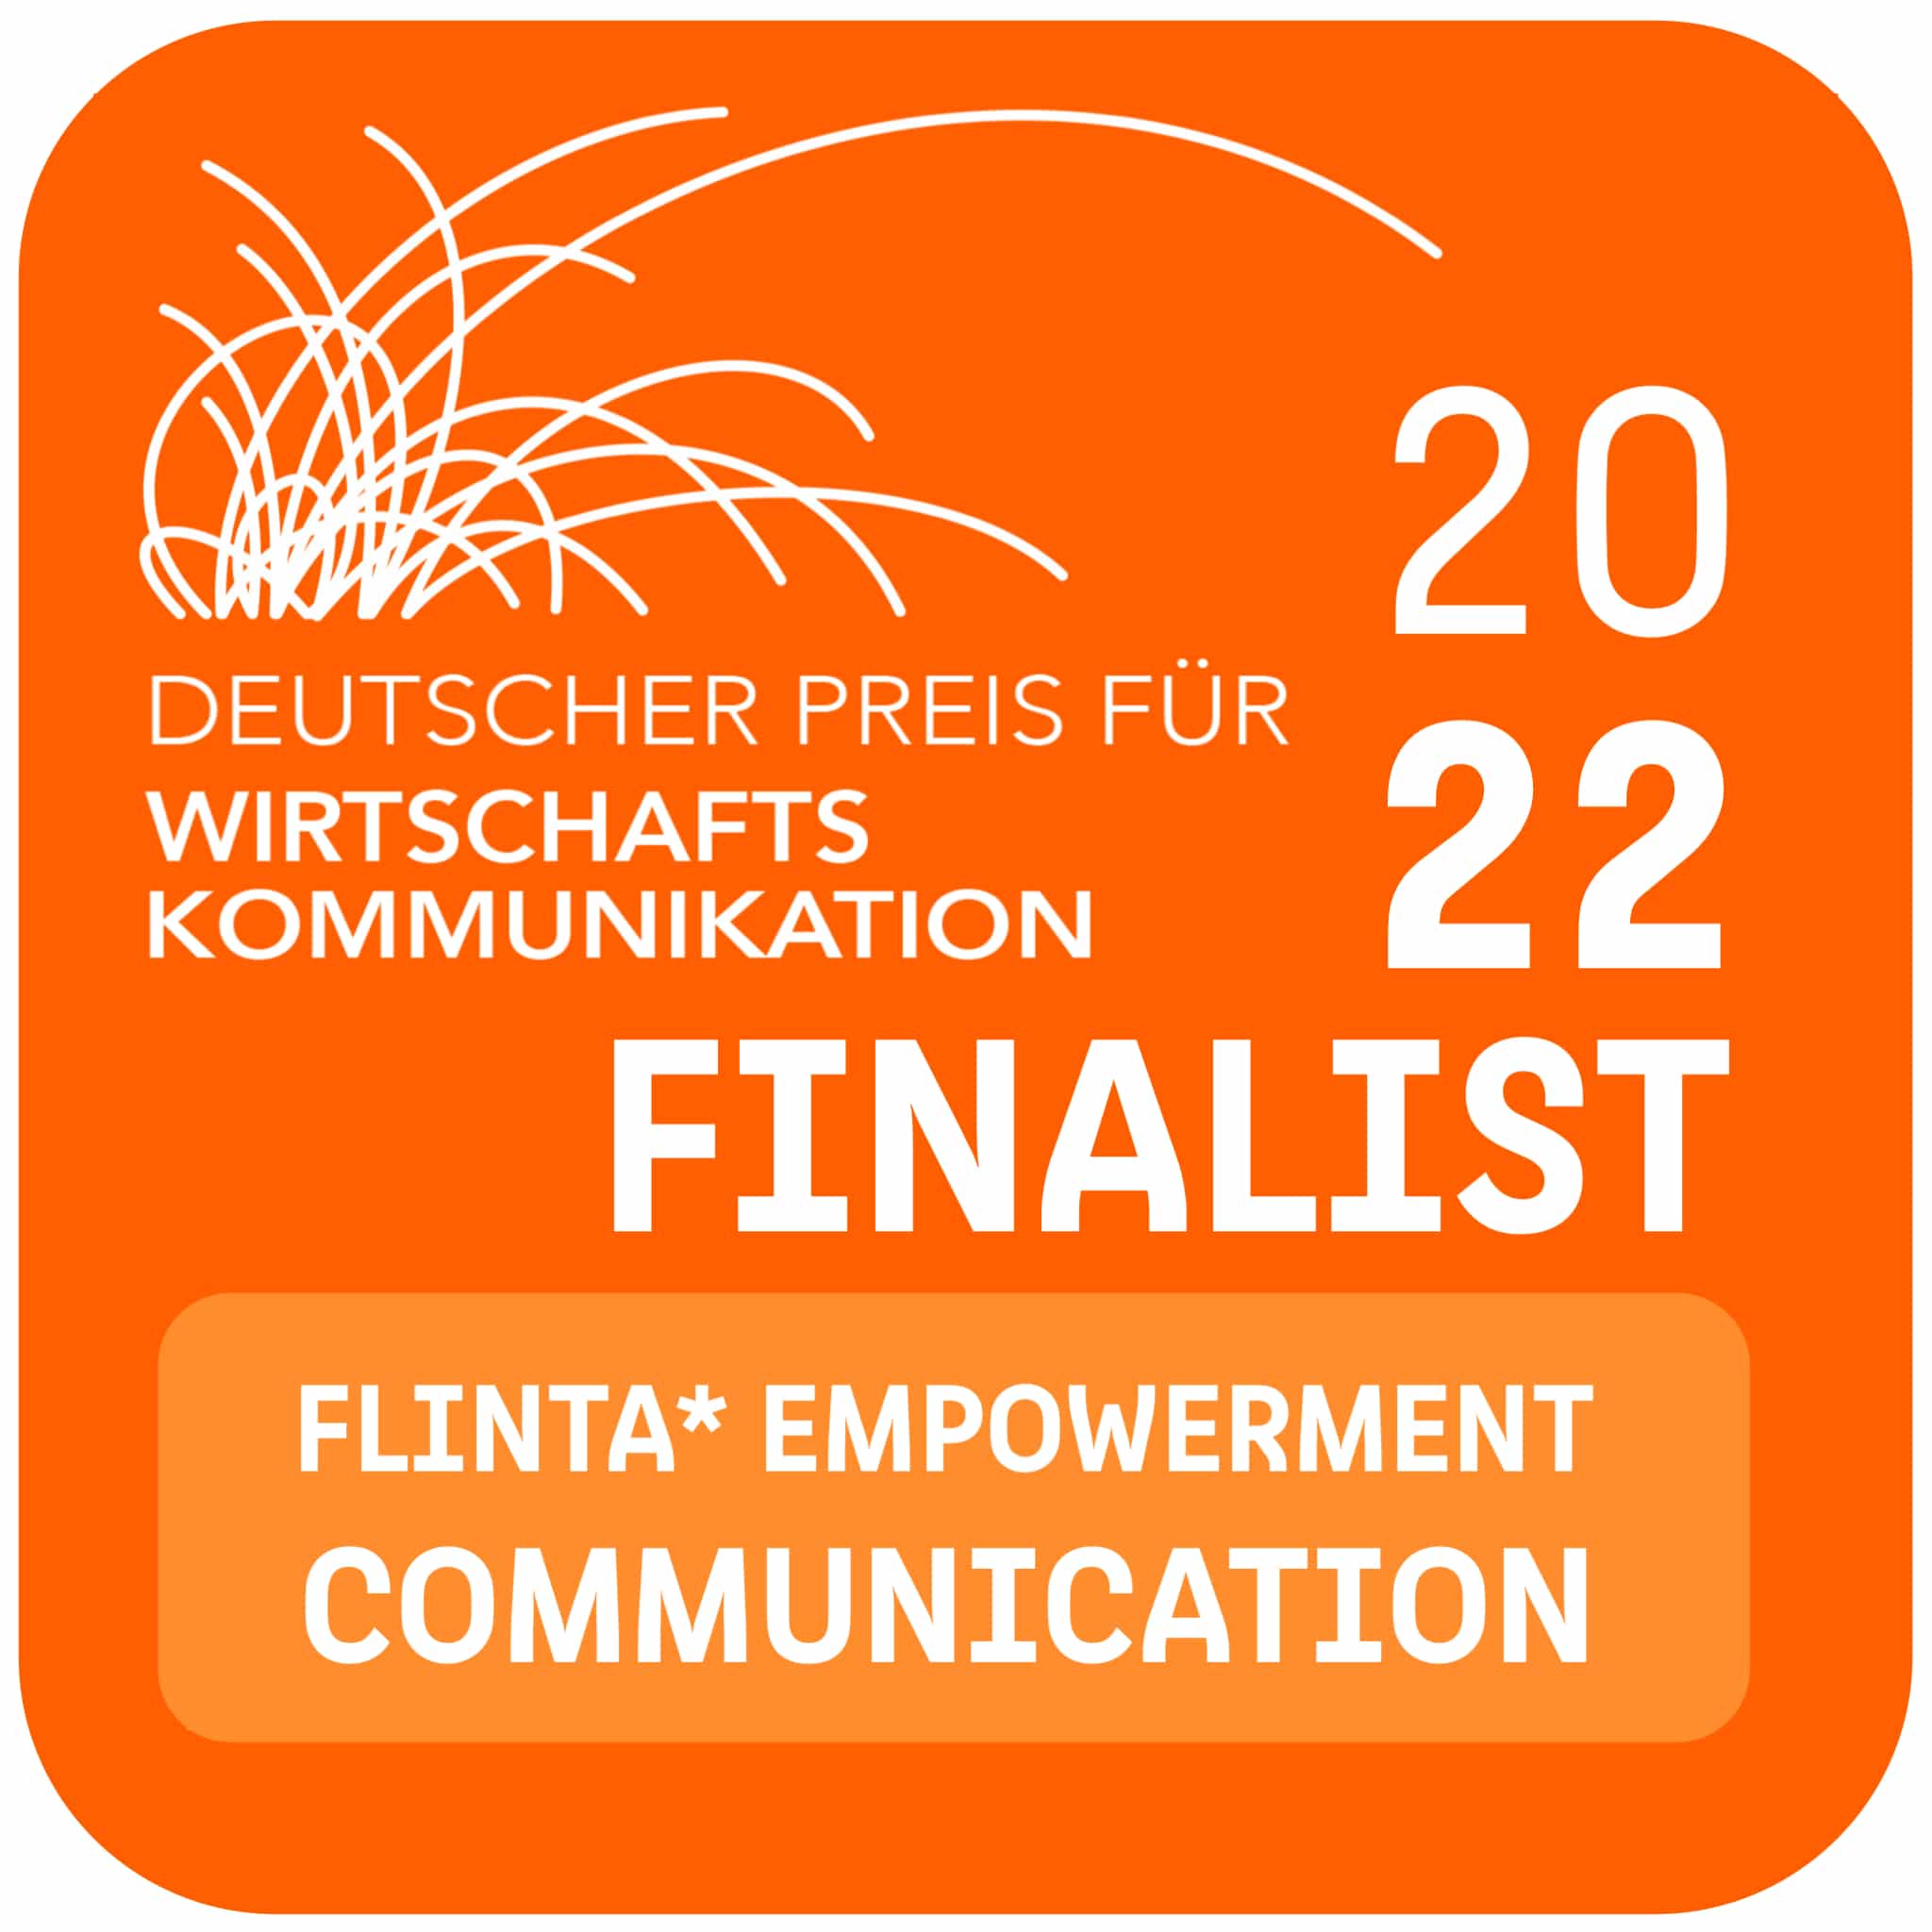 #NetzCourage für Kommunikationspreis in Deutschland nominiert